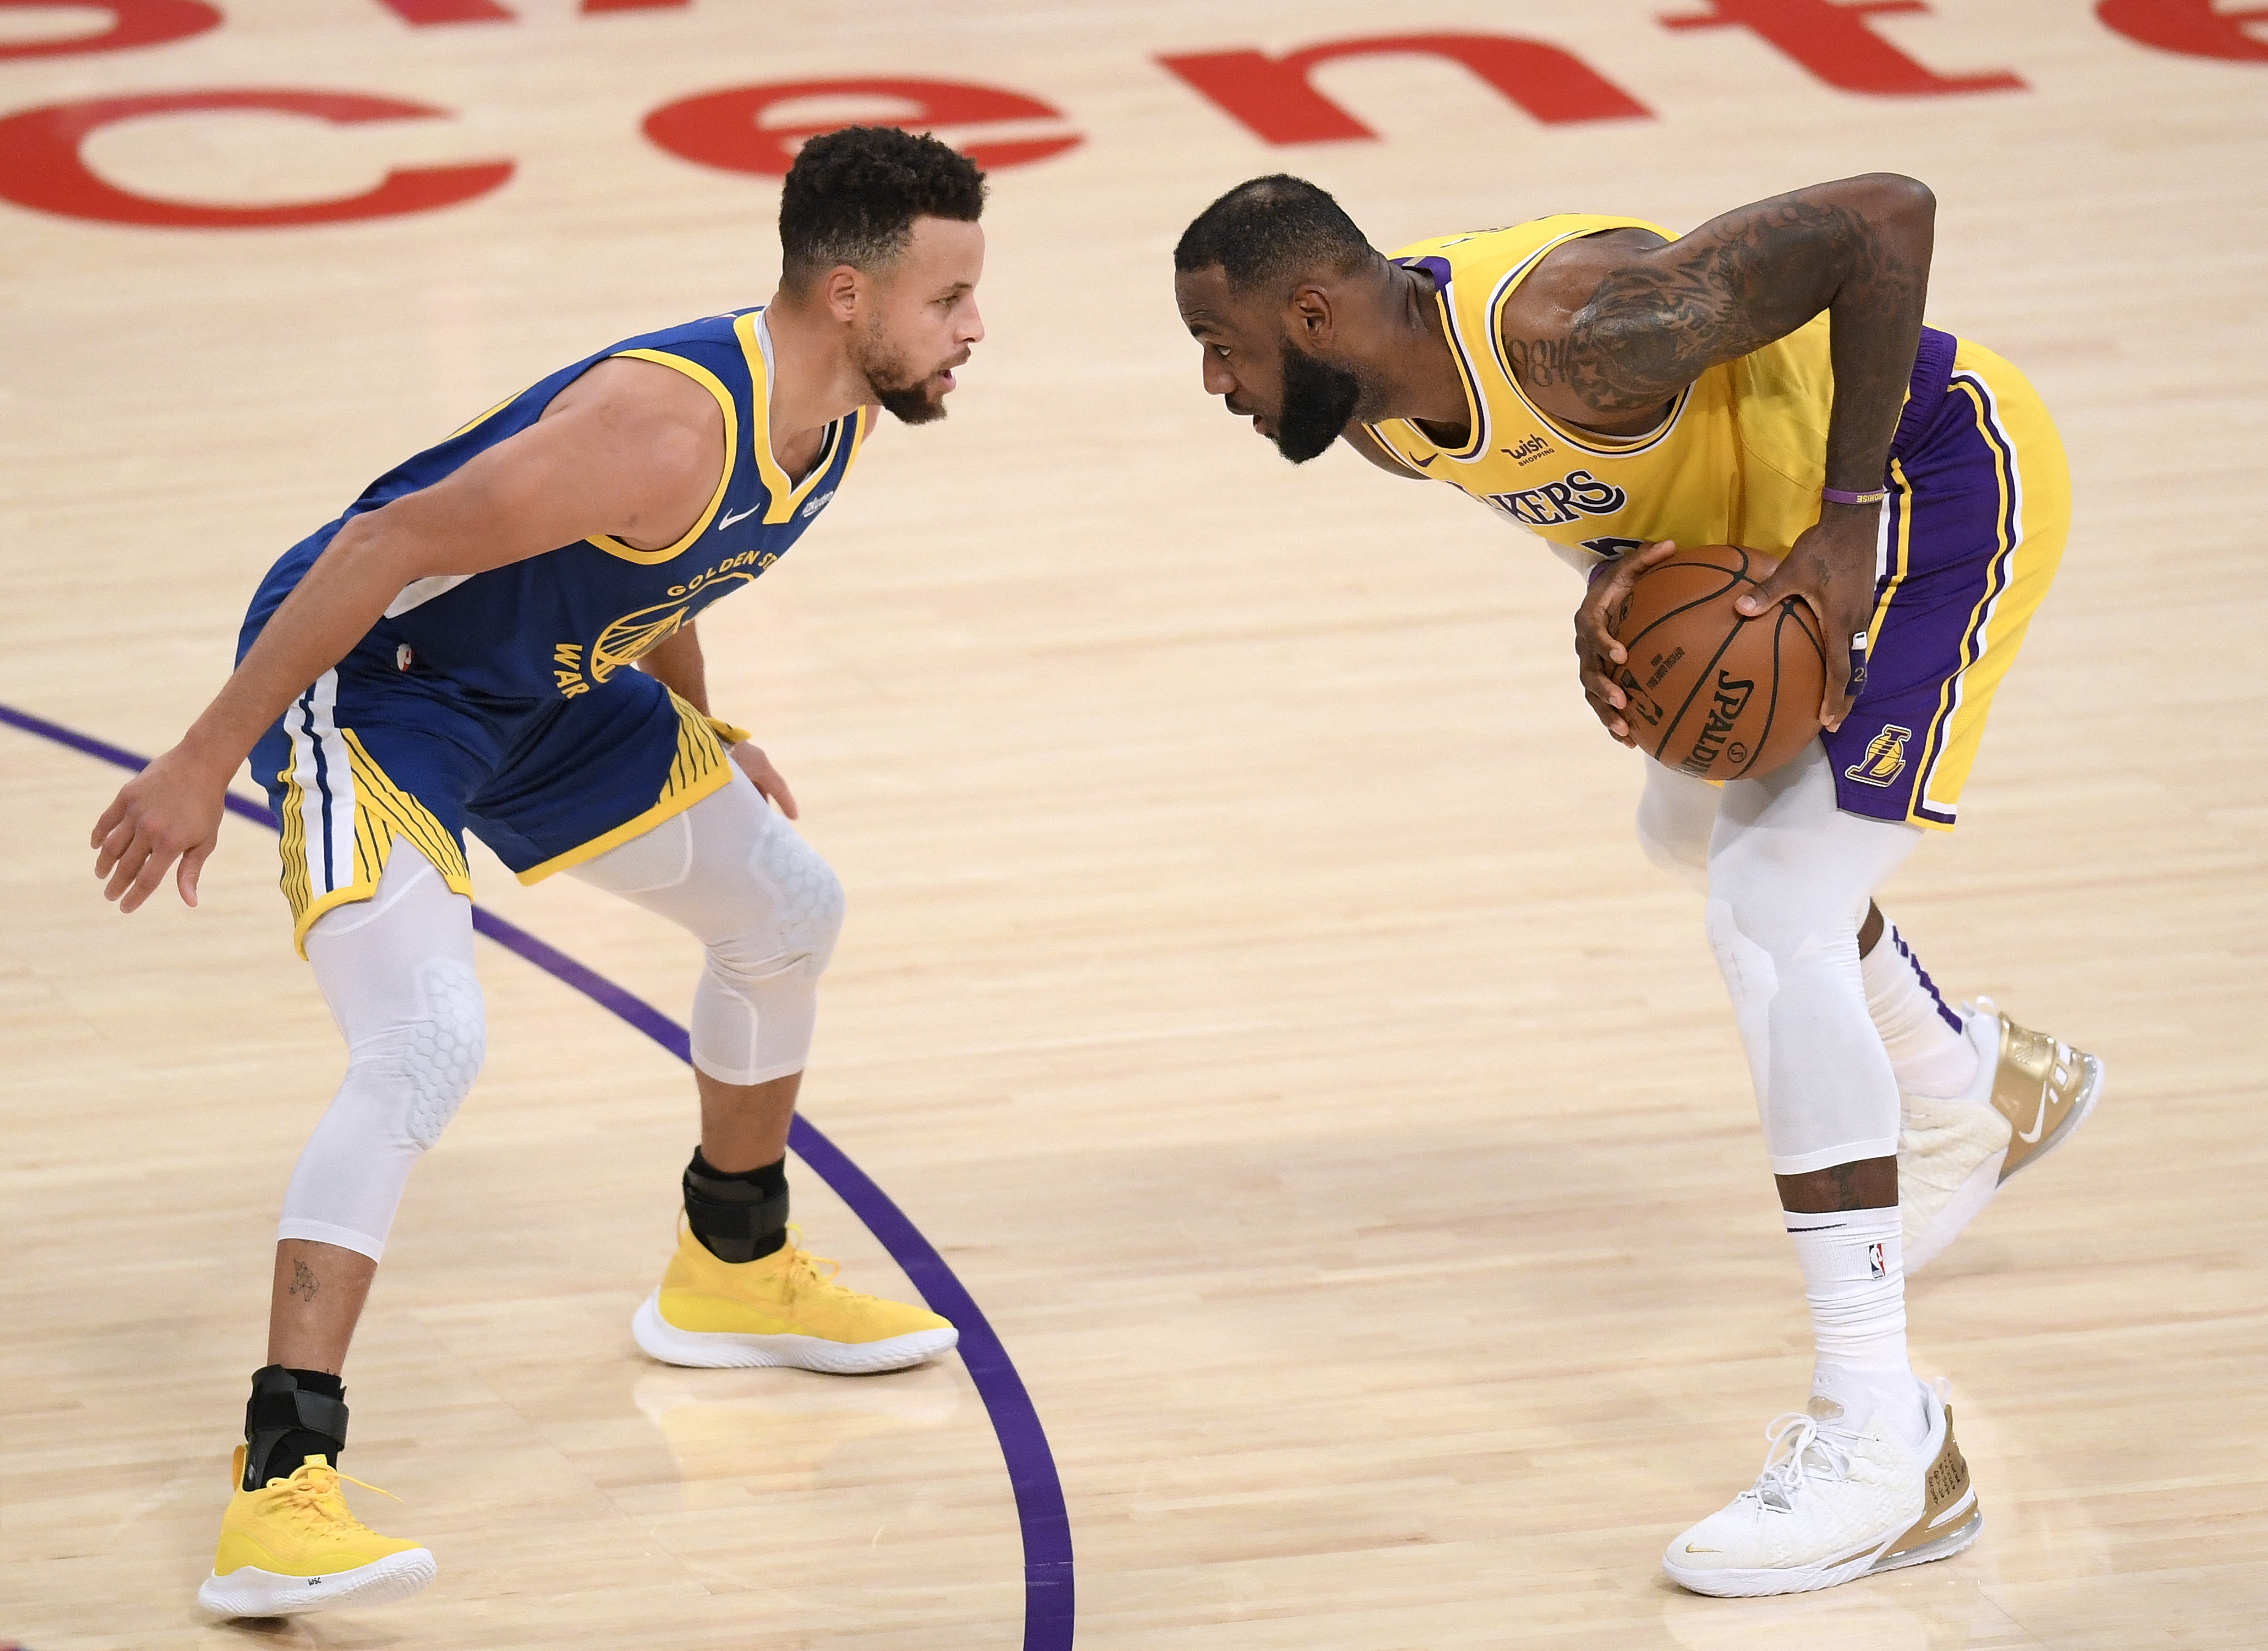 LeBron contra Curry, duelo legendario por un boleto a los playoffs de NBA